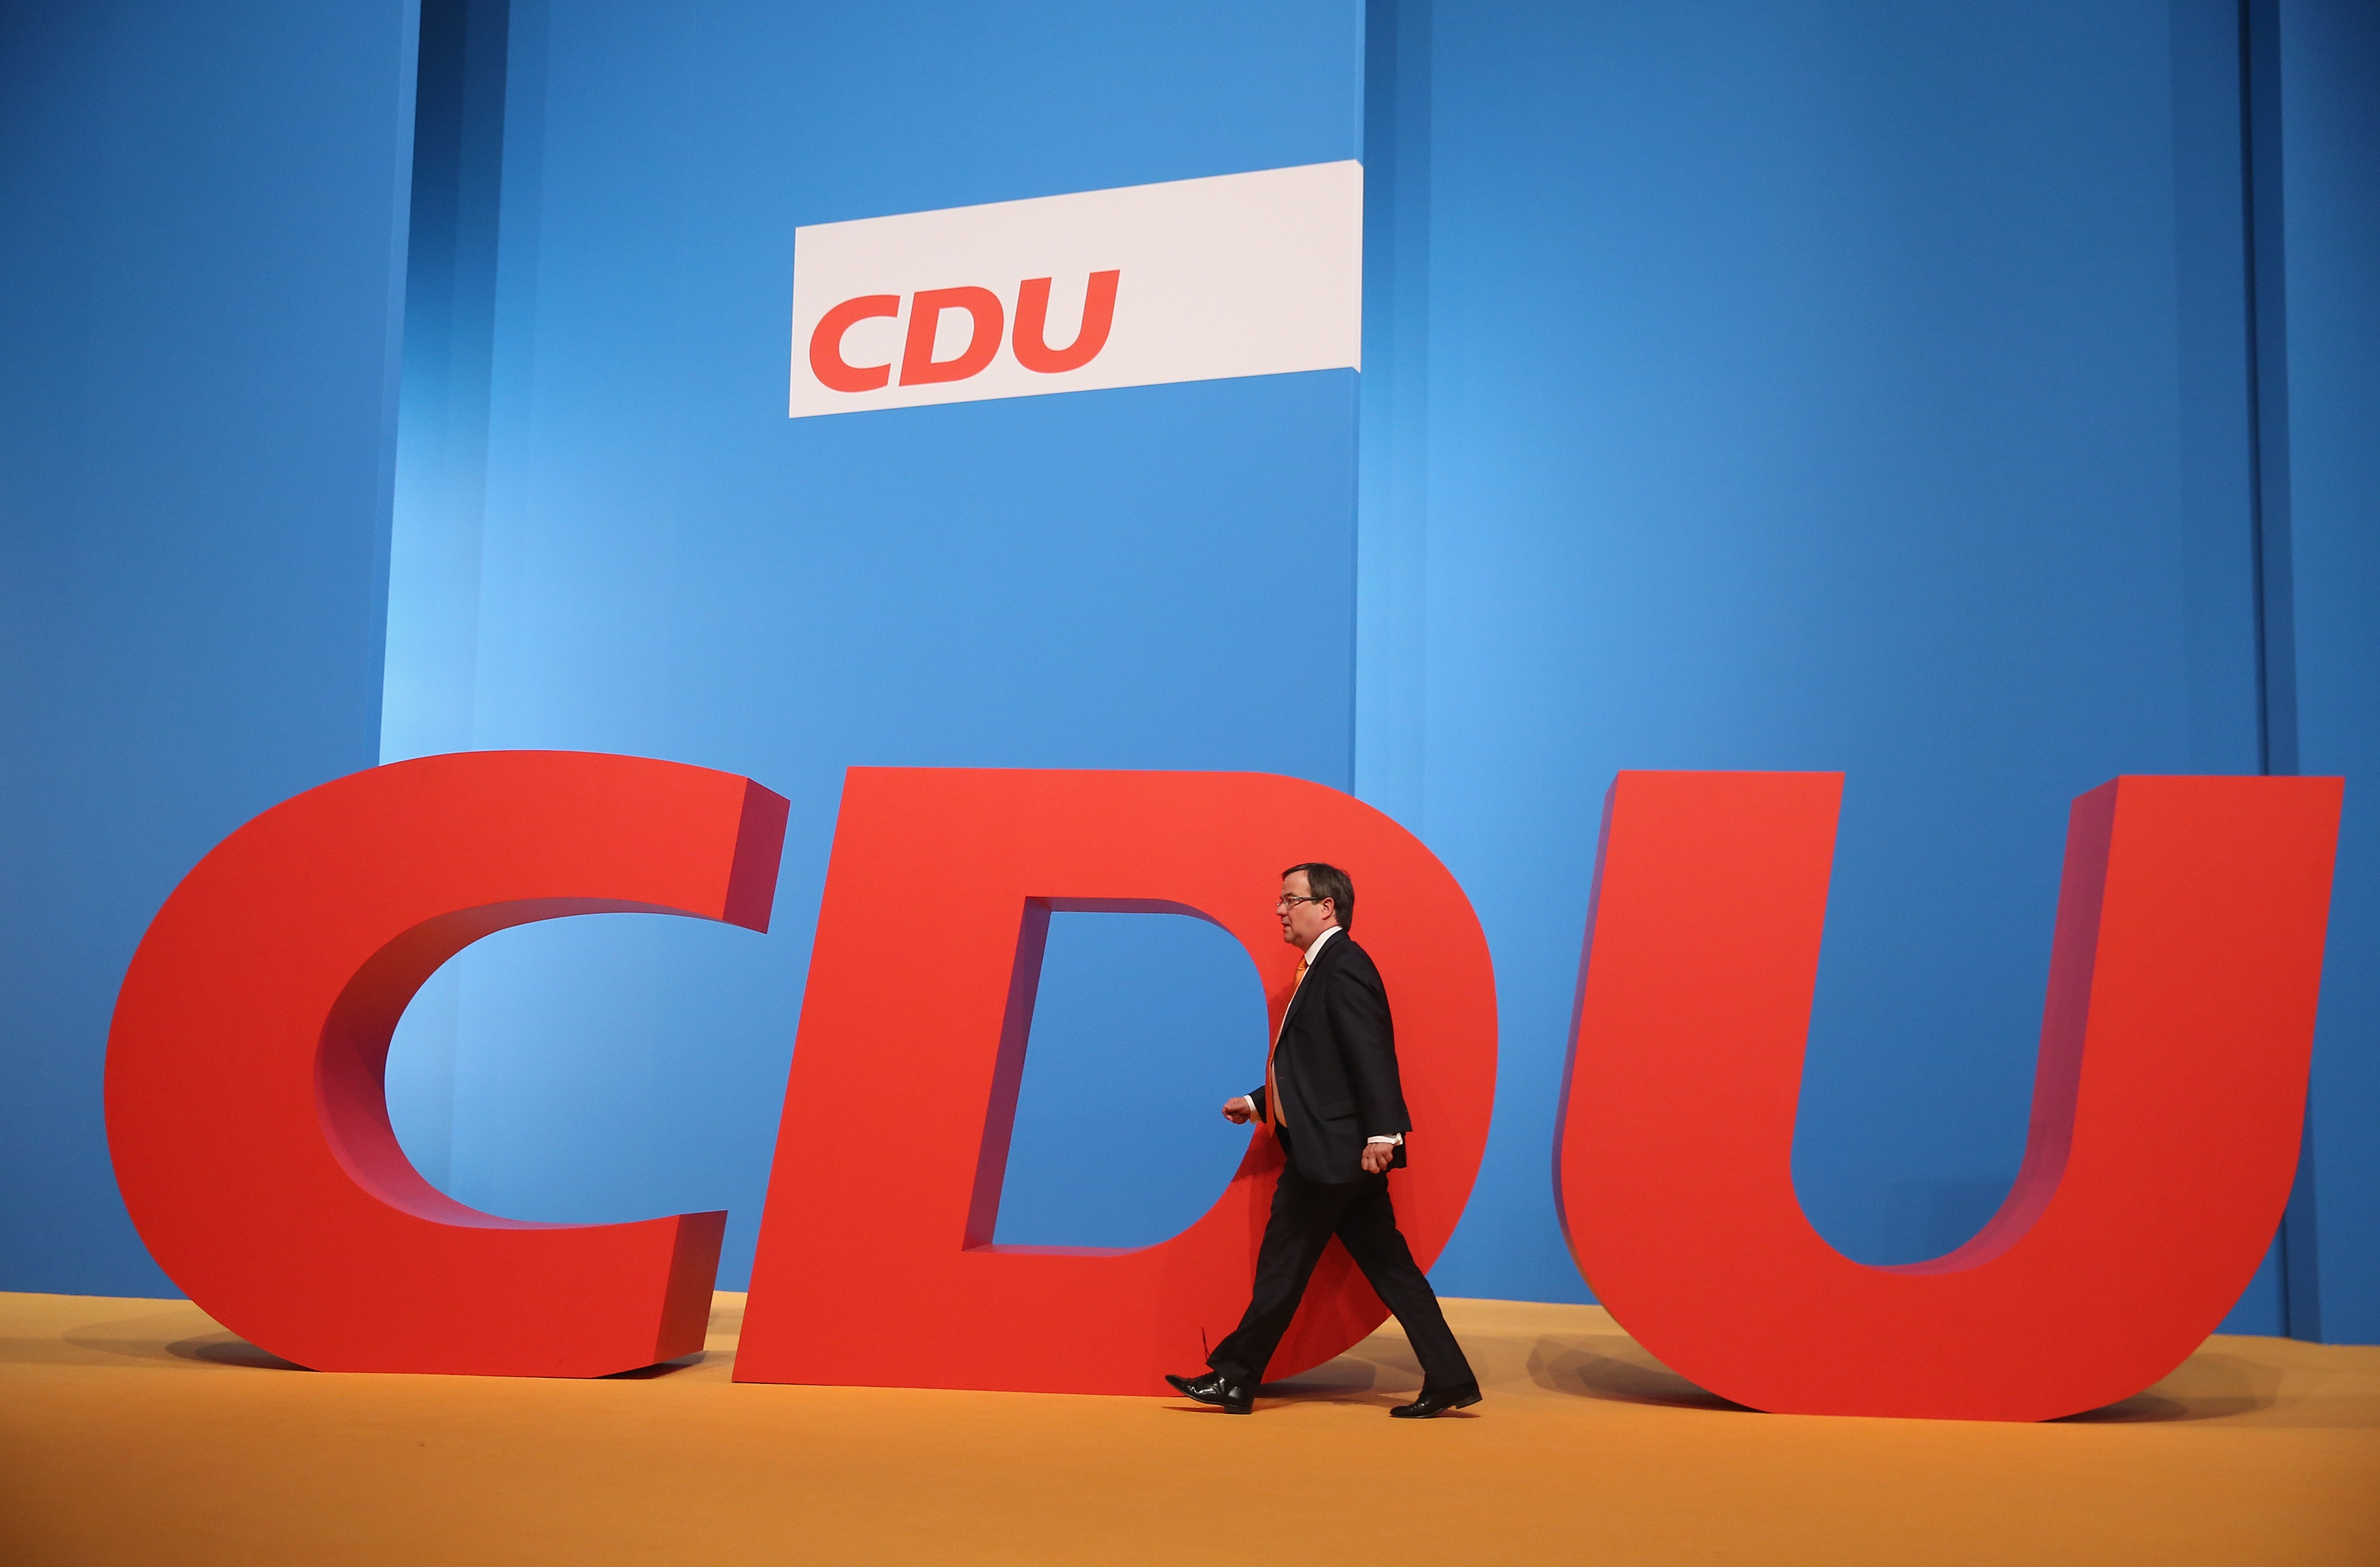 CDU erstmals als links! – So sehen Wähler aktuell die Parteien